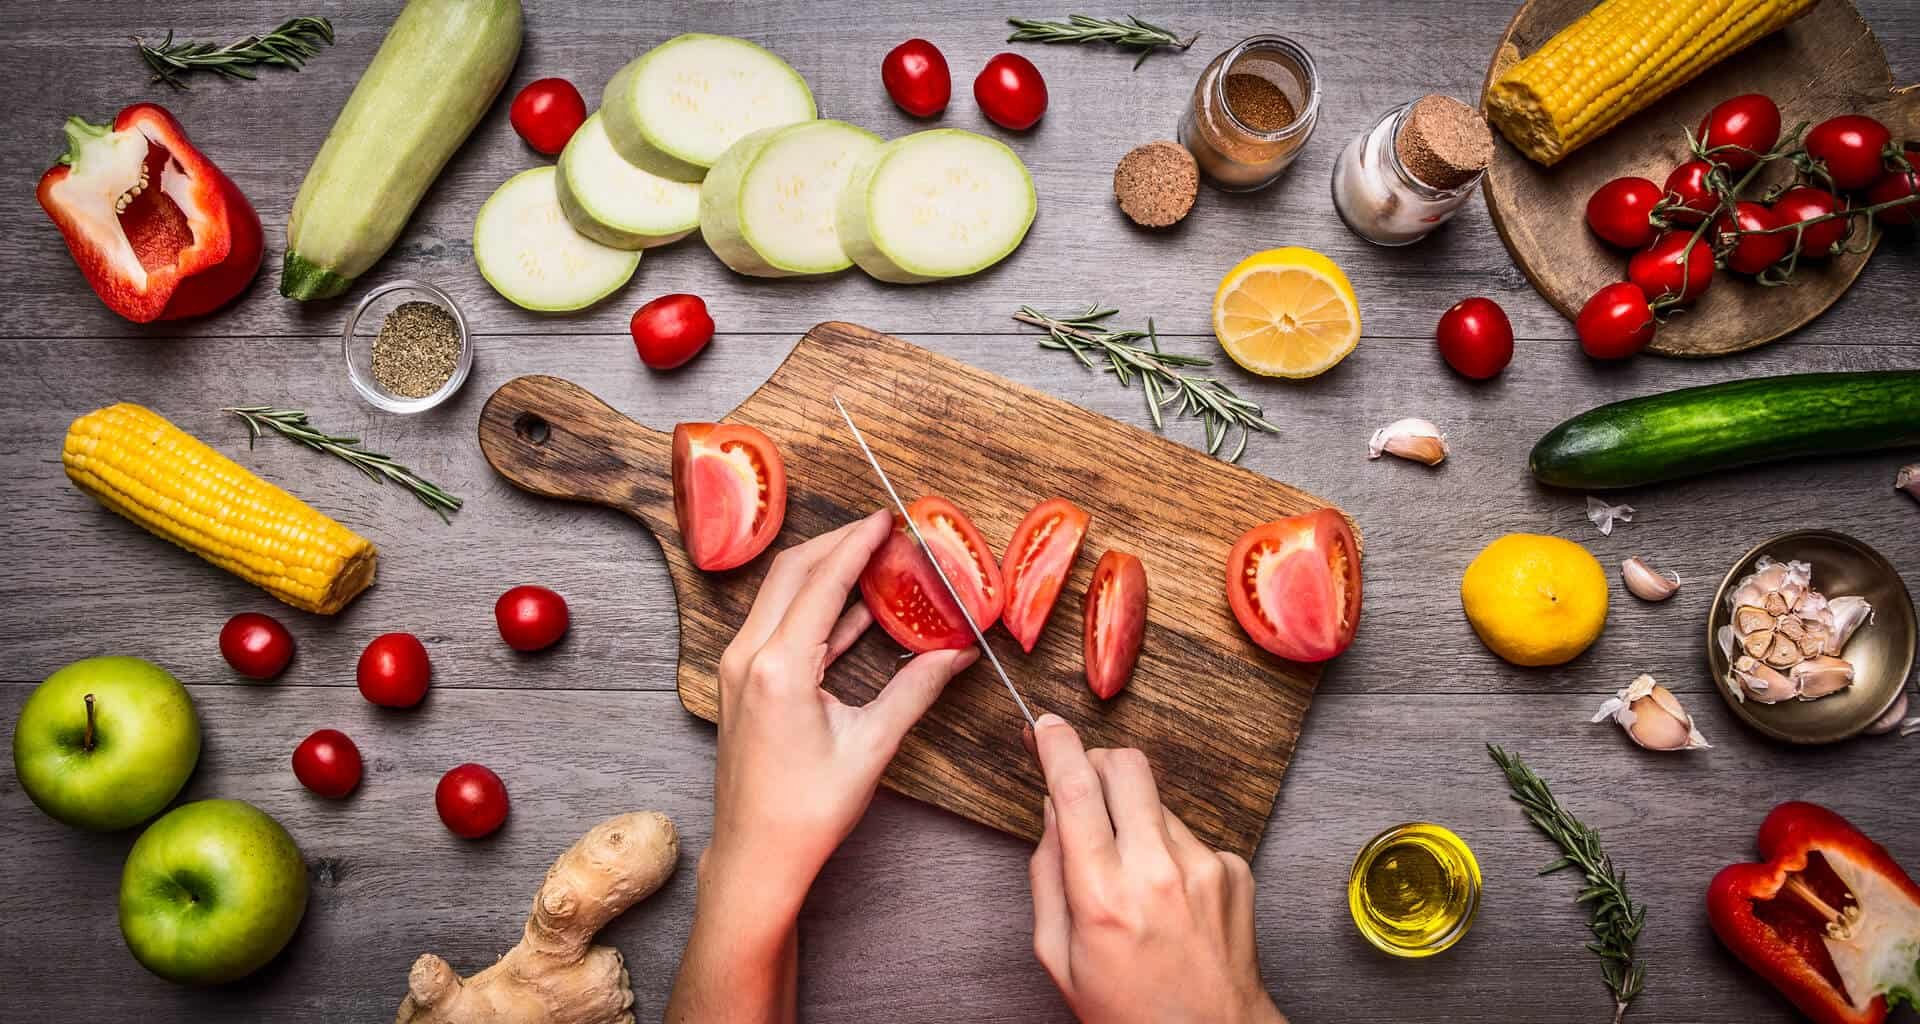 تعرف على 5 طرق غذائية نباتية مفيدة لصحتك